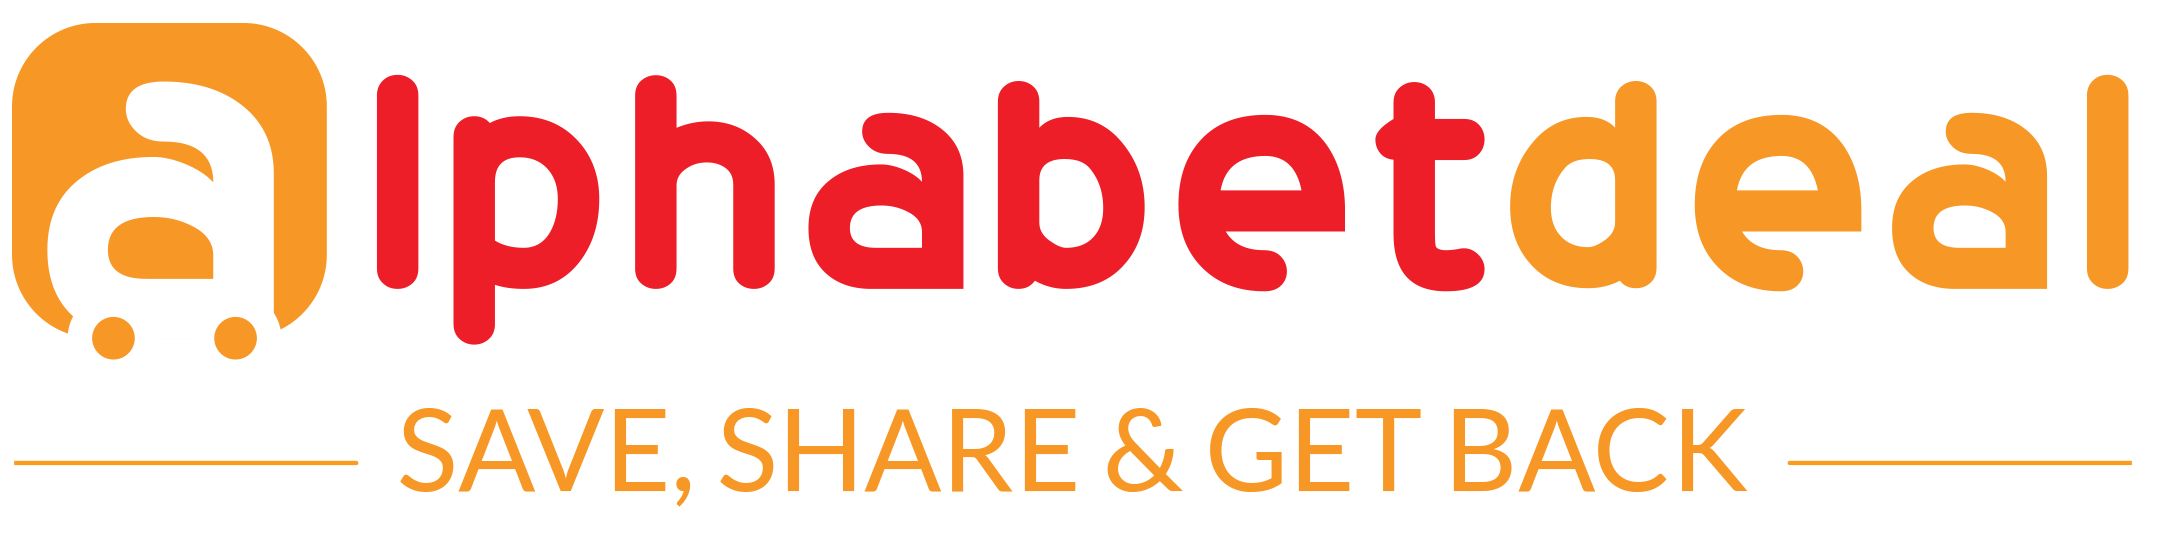 Alphabetdeal.com inc_logo